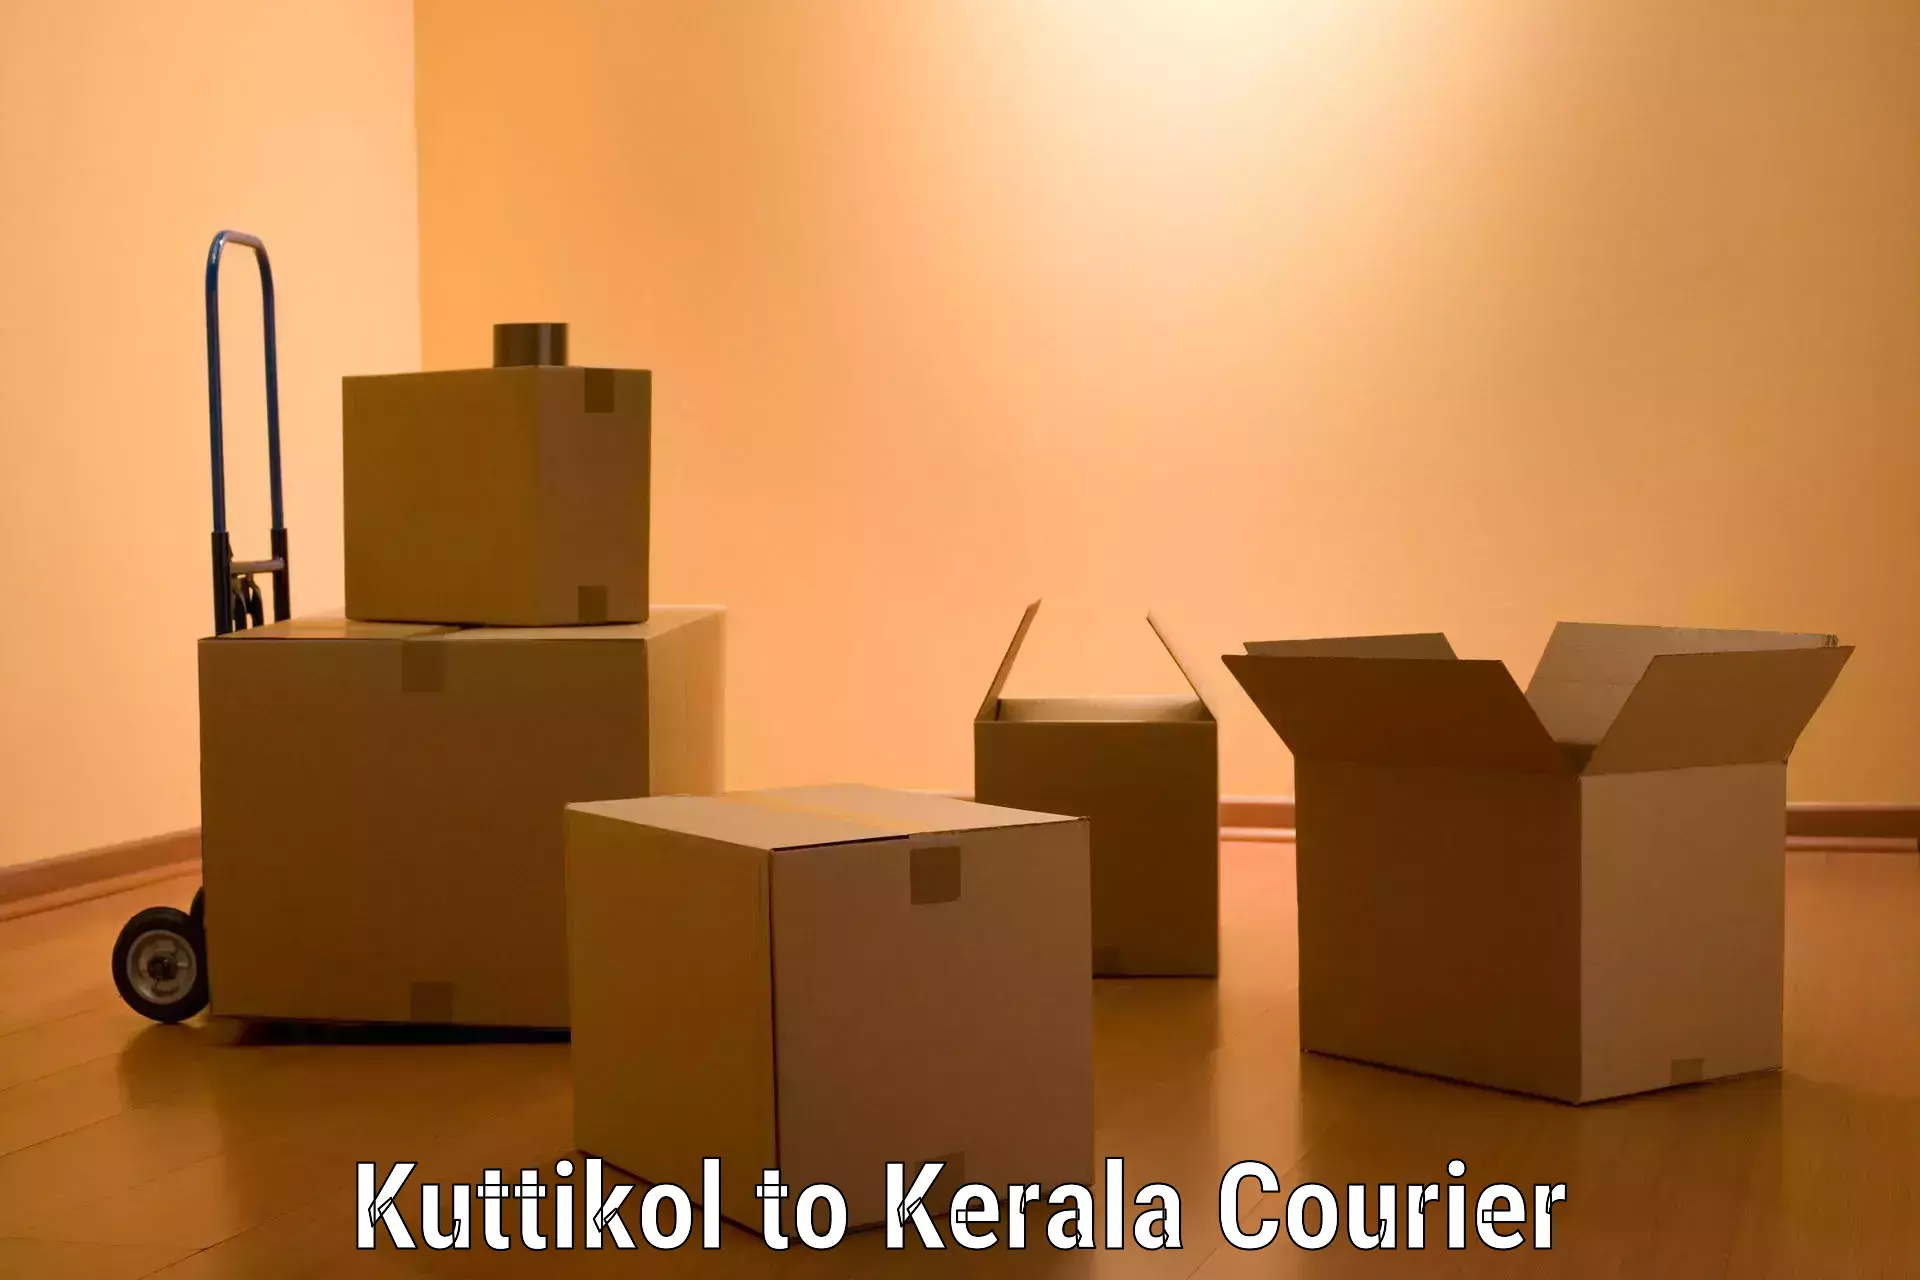 Professional moving company Kuttikol to Kerala